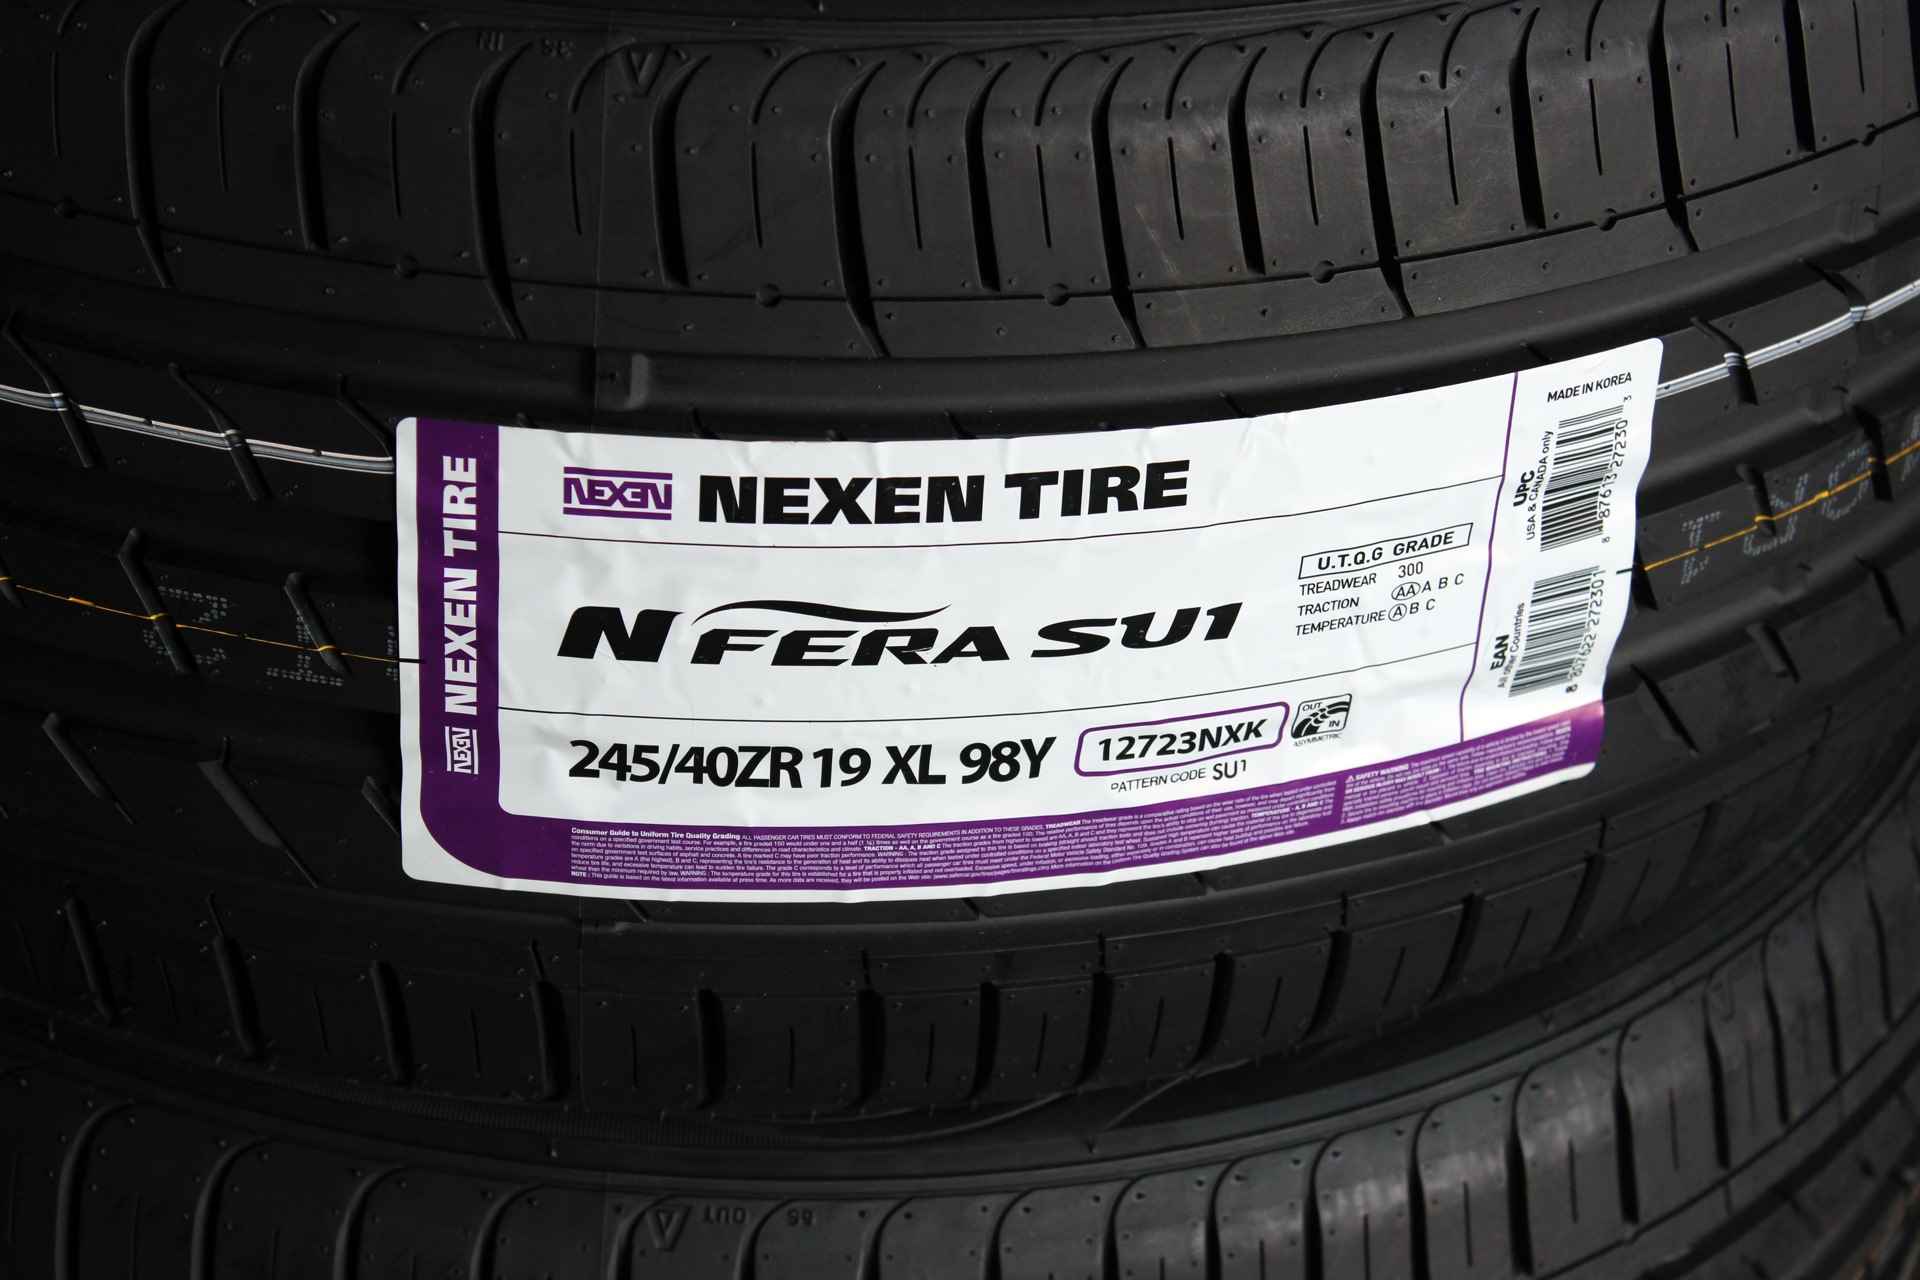 Nexen nfera sport. 245/40/19 Nexen. 245/40 R19 Nexen NFERA su1 98y XL. Nexen n'Fera su1 245/40r19 98y. Nexen n'Fera su1 245/35r19 93y.